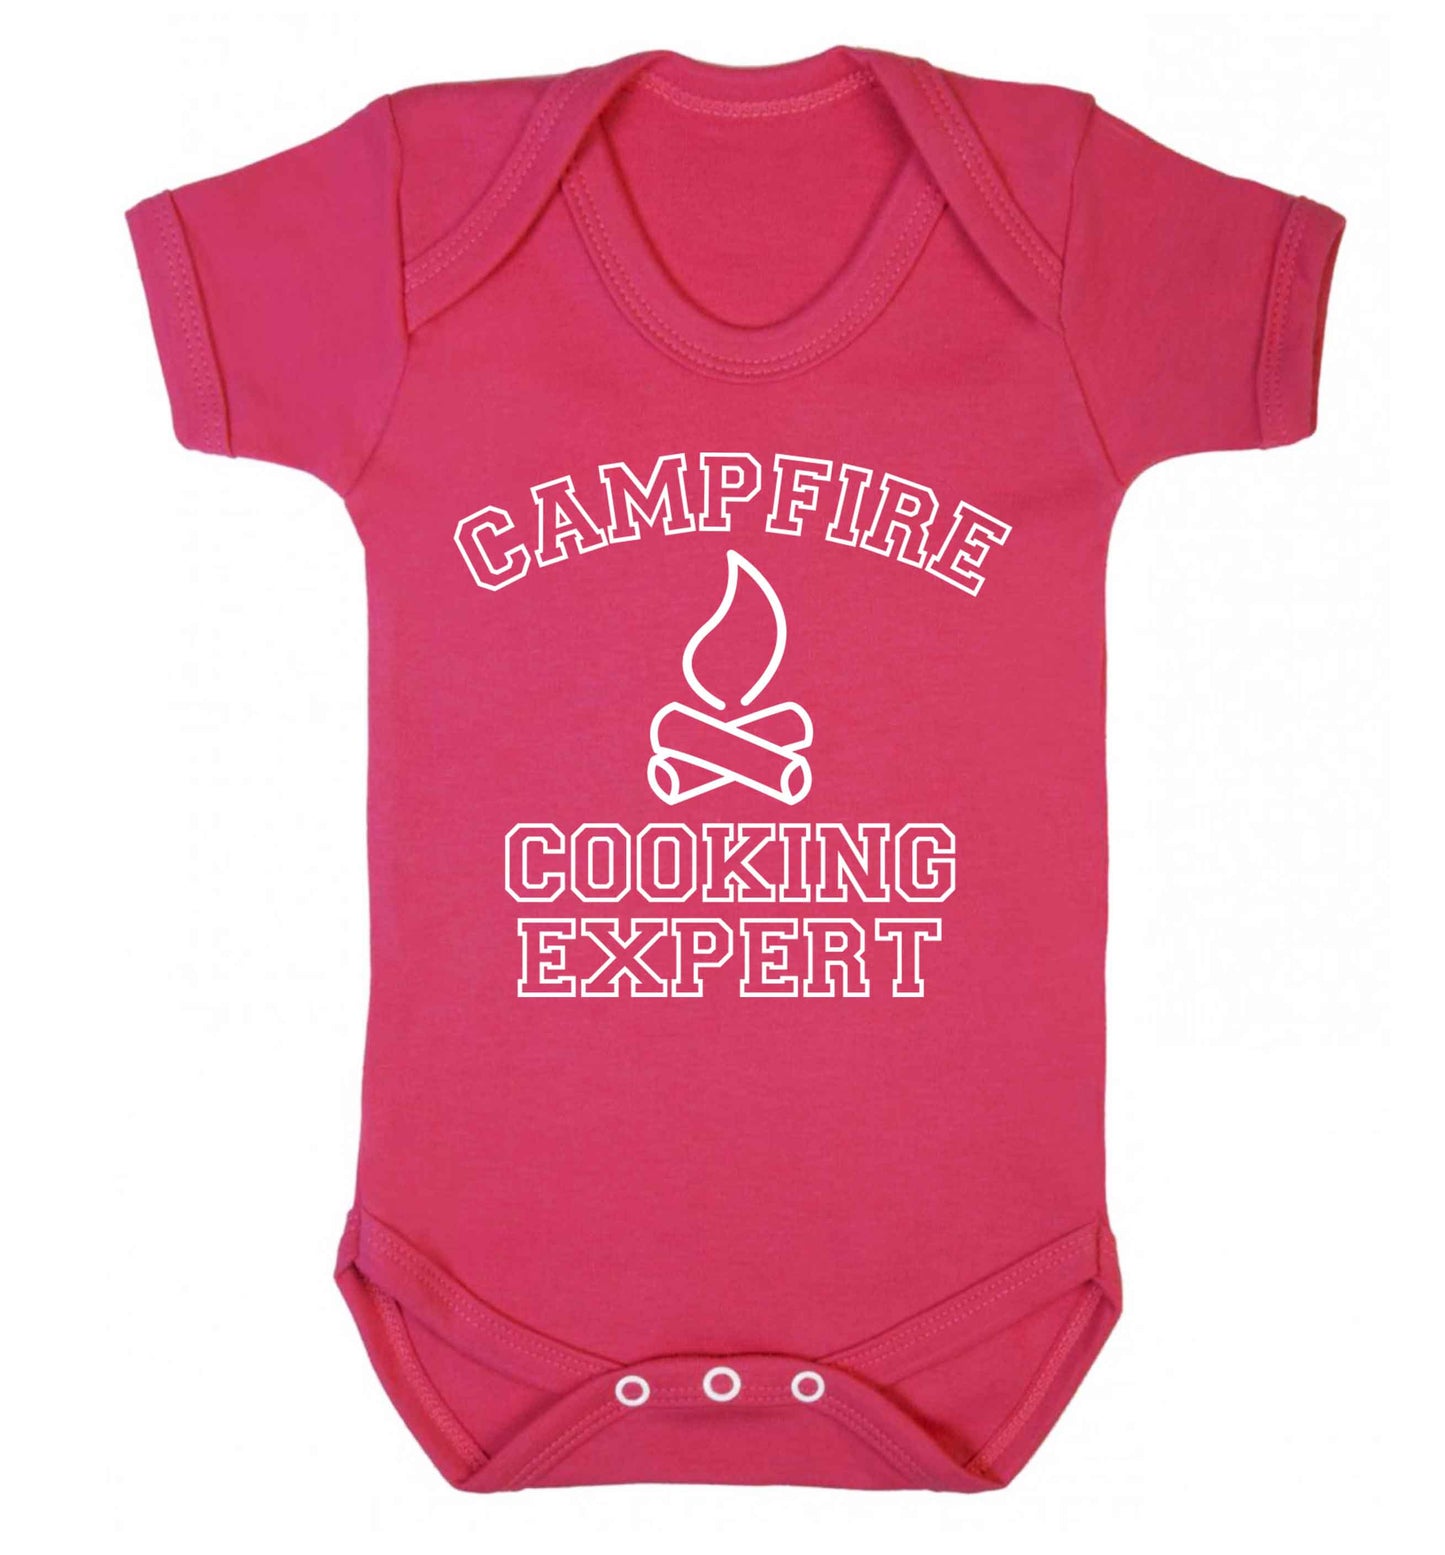 Campfire cooking expert Baby Vest dark pink 18-24 months